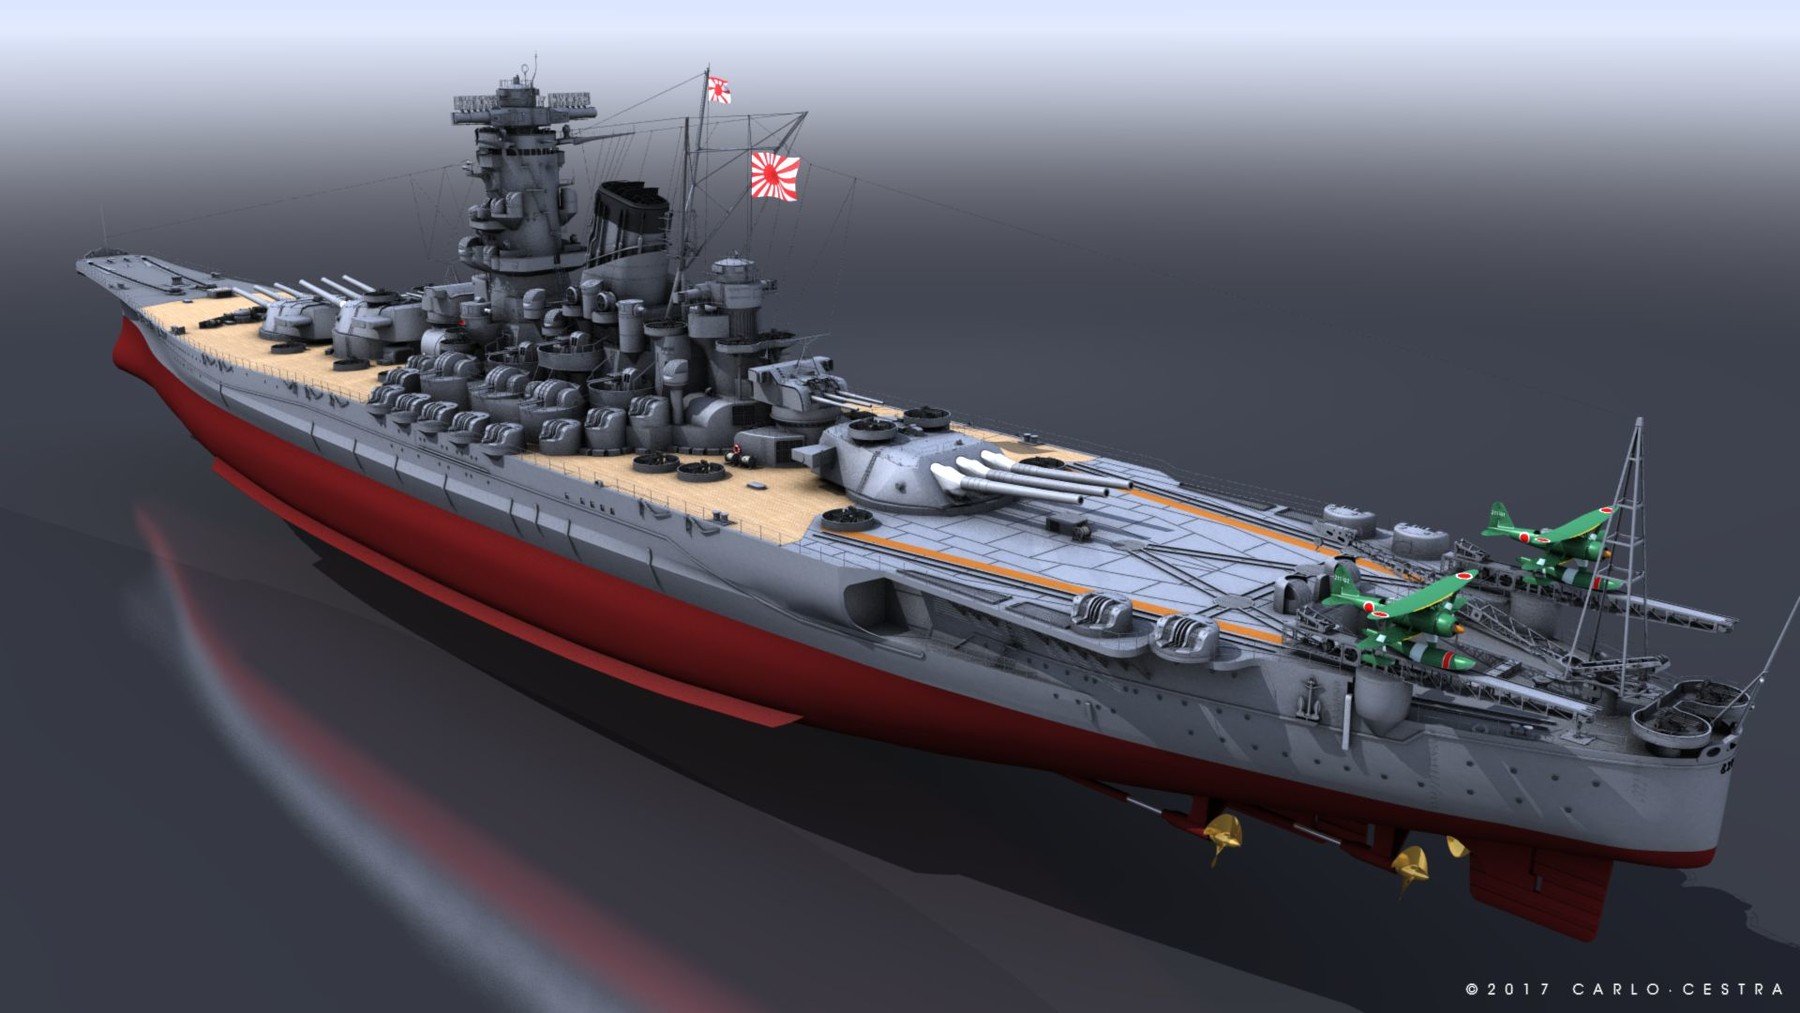 free 3d battleship games online